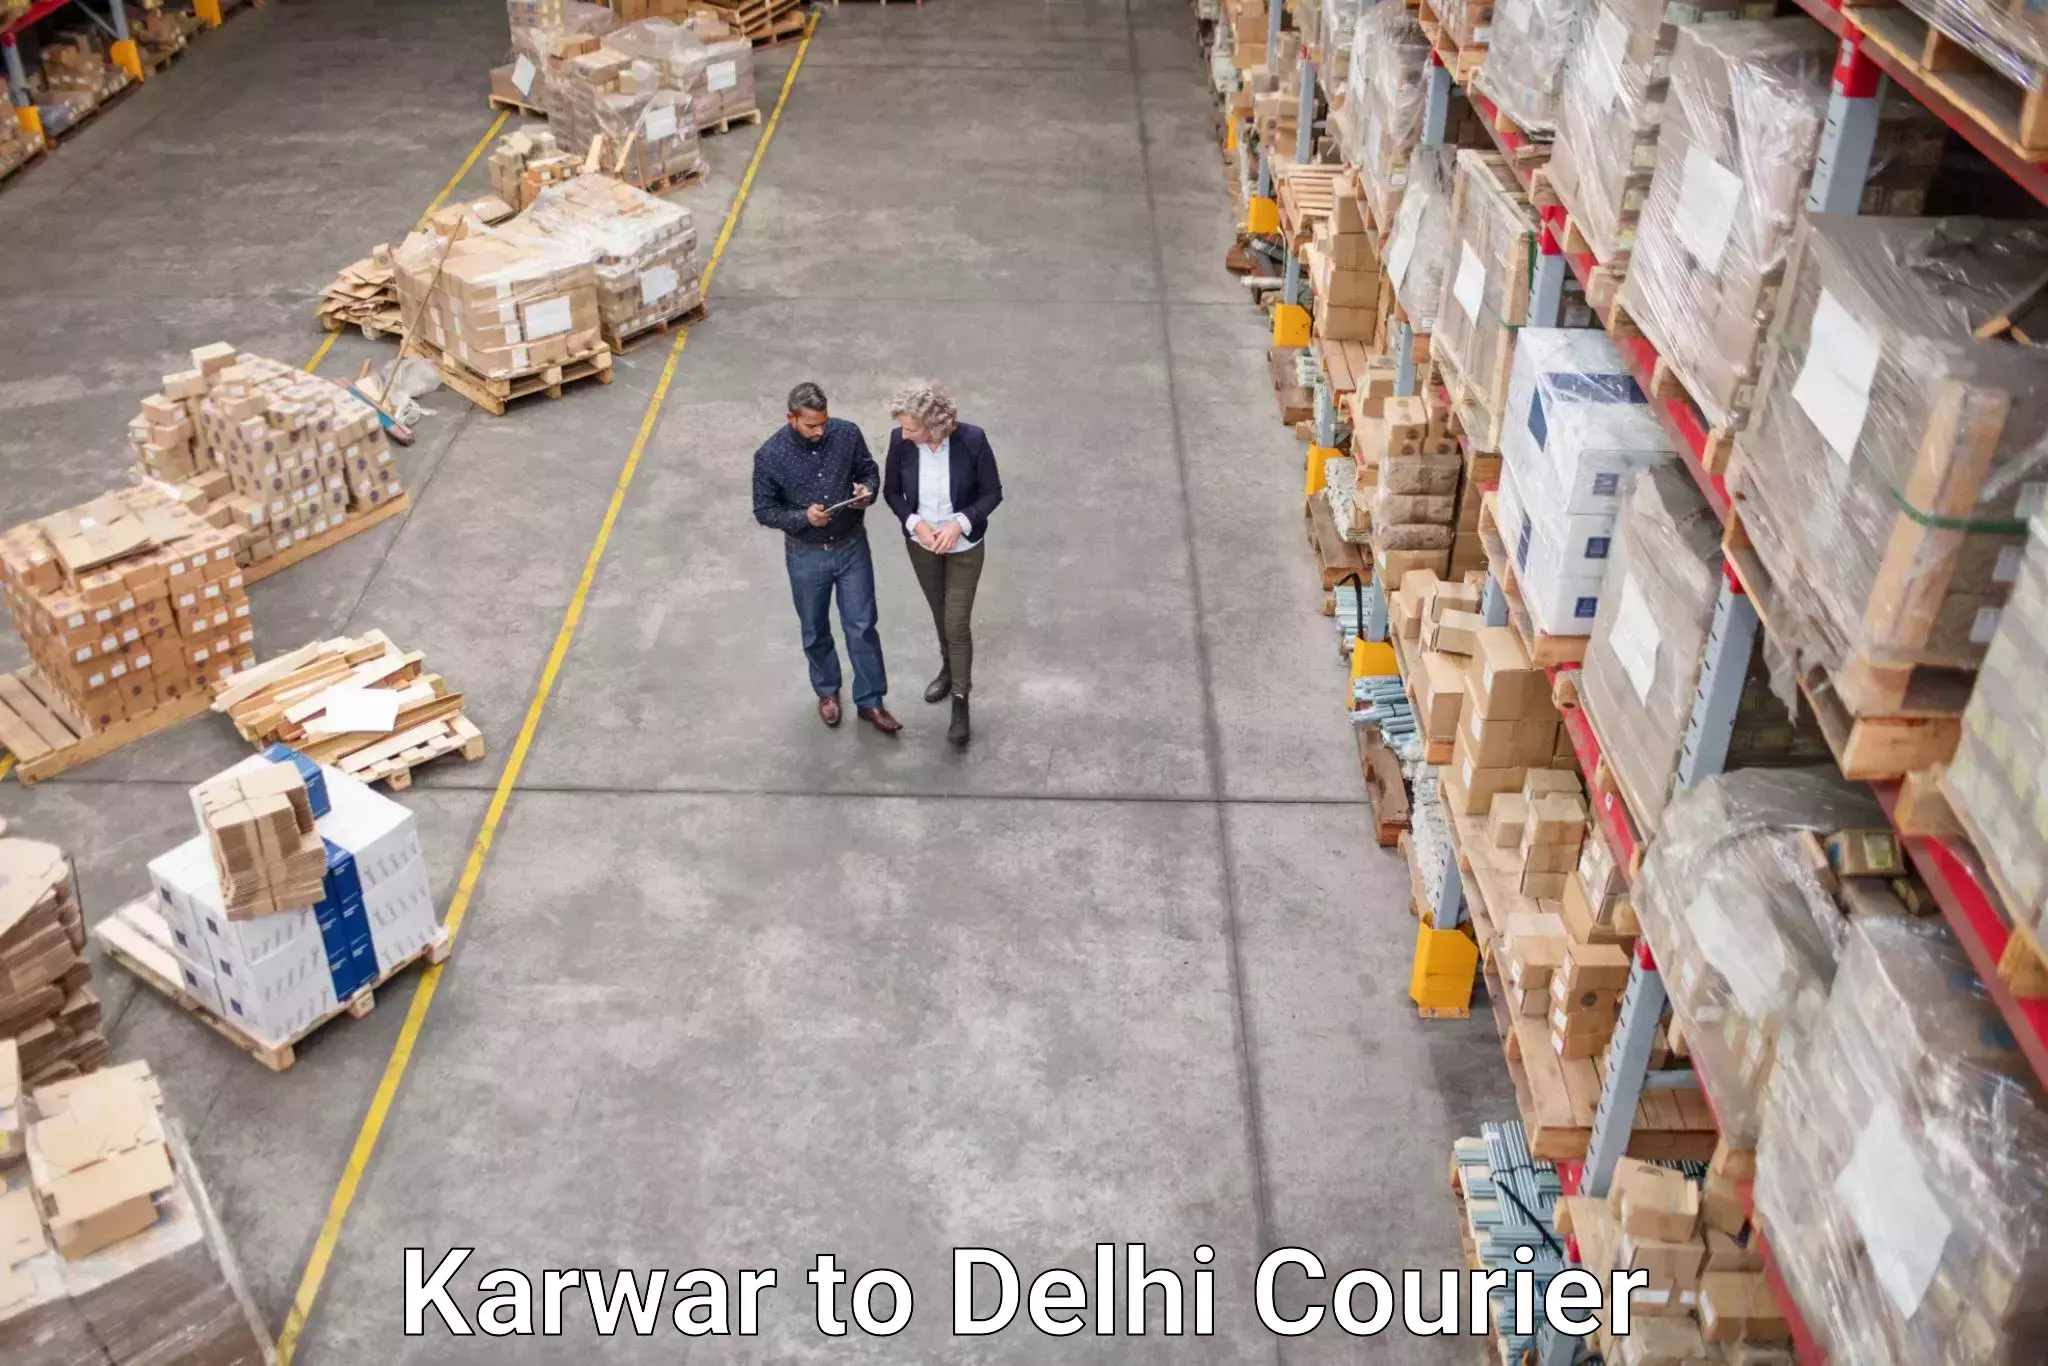 User-friendly courier app Karwar to University of Delhi